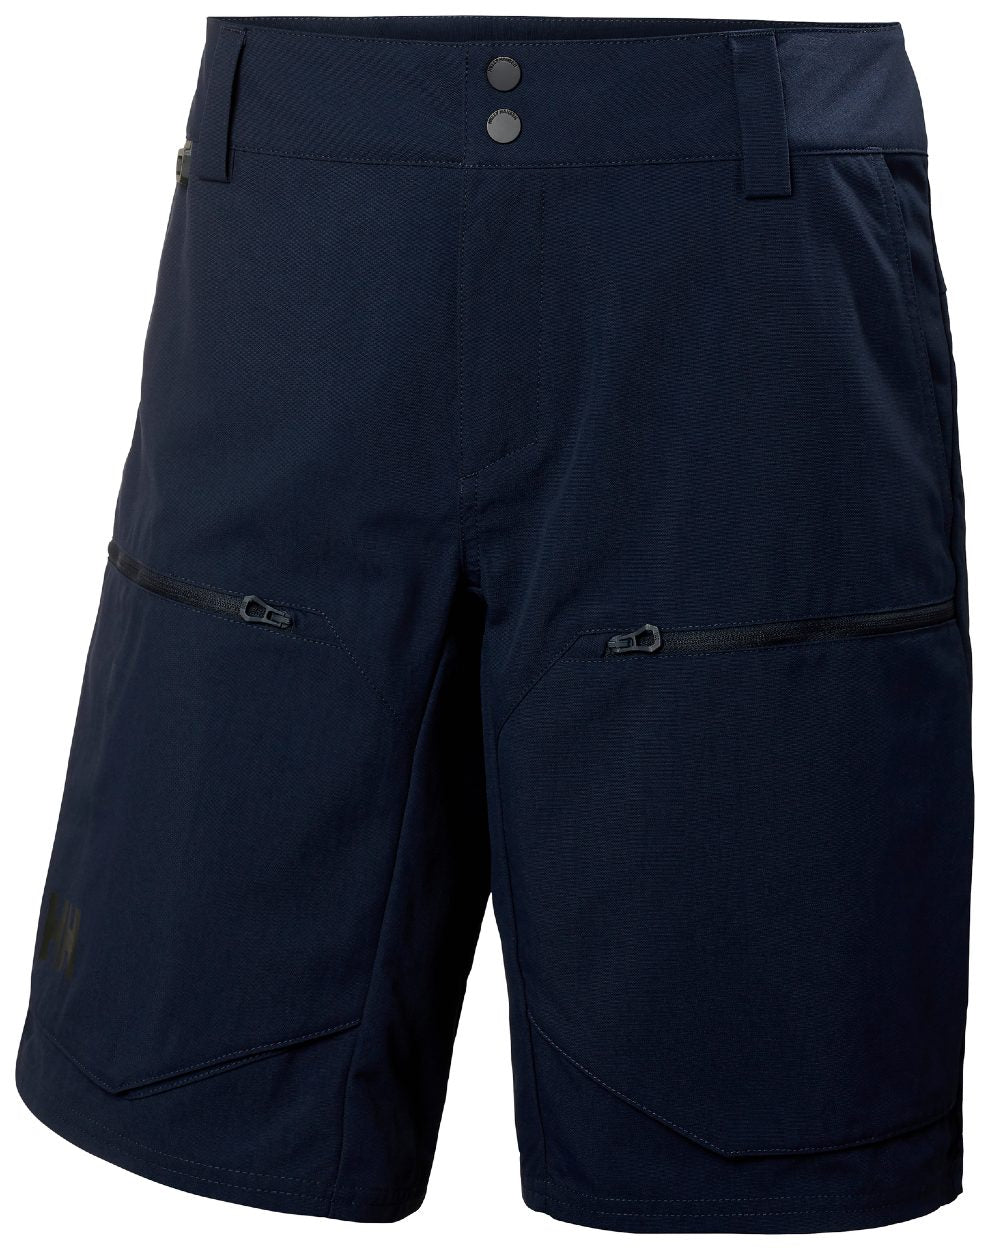 Navy coloured Helly Hansen Mens Crewline Cargo Shorts 2.0 on white background 